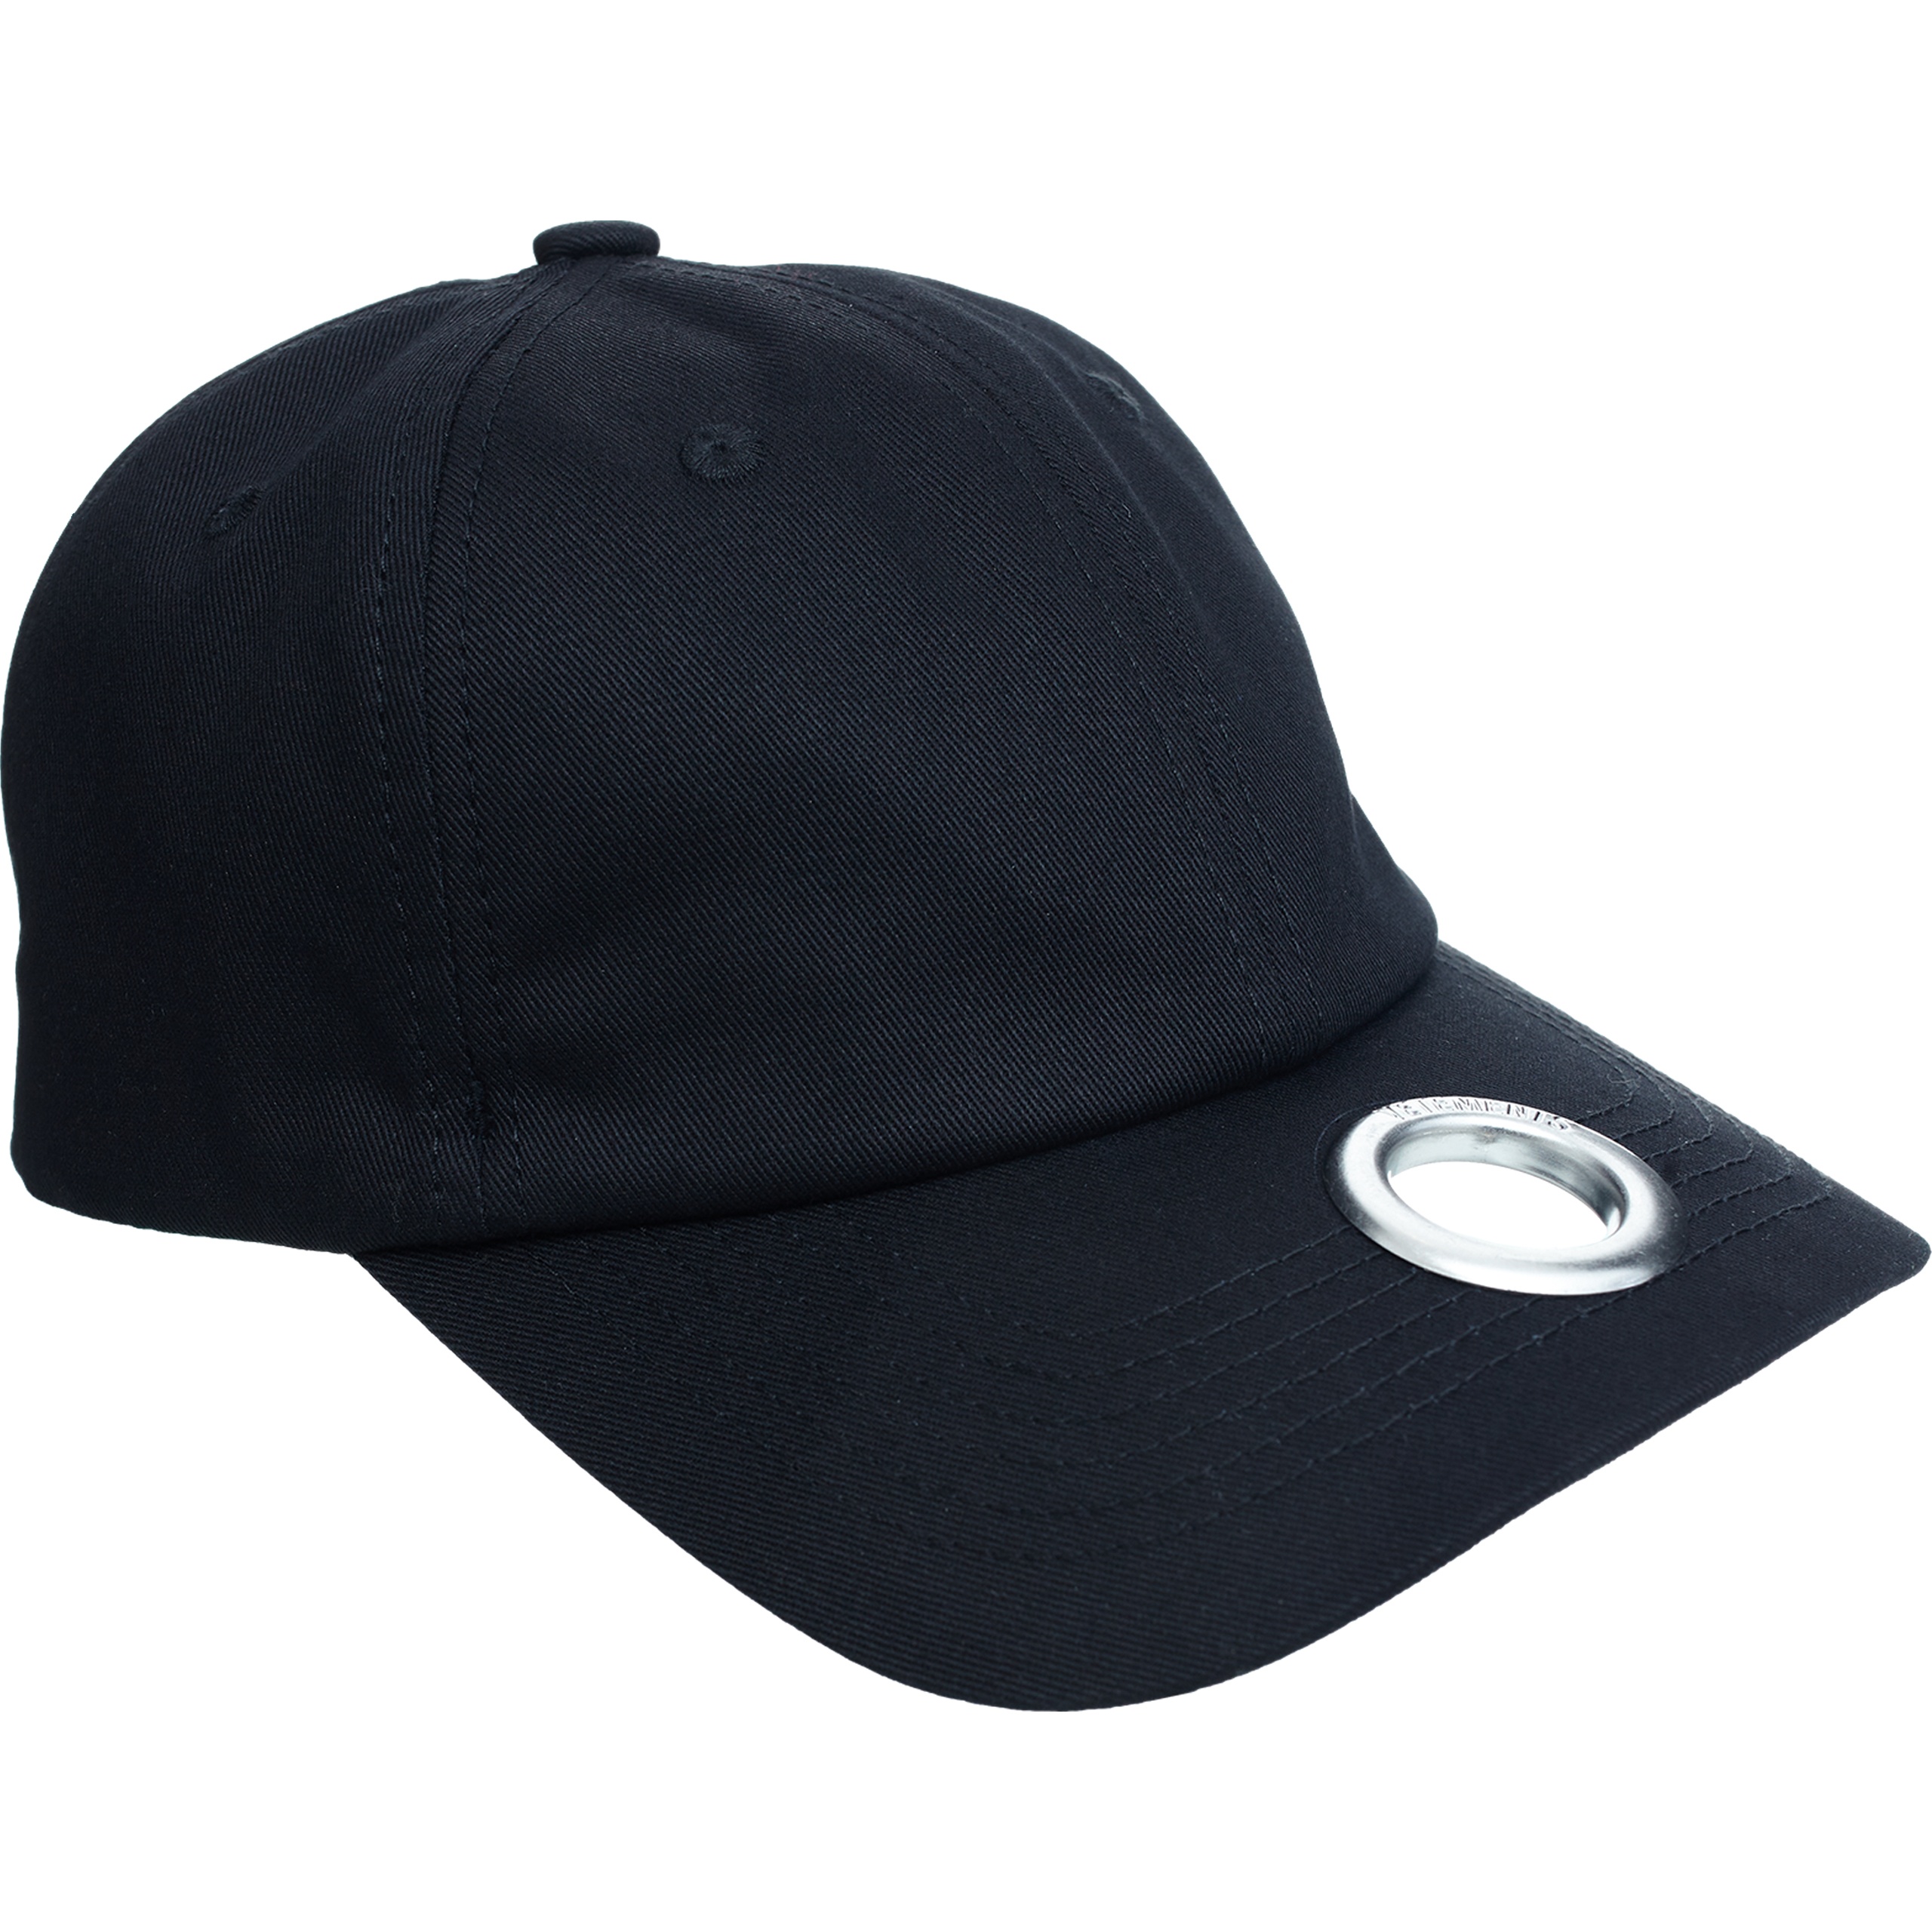 BLACK RING CAP - 1